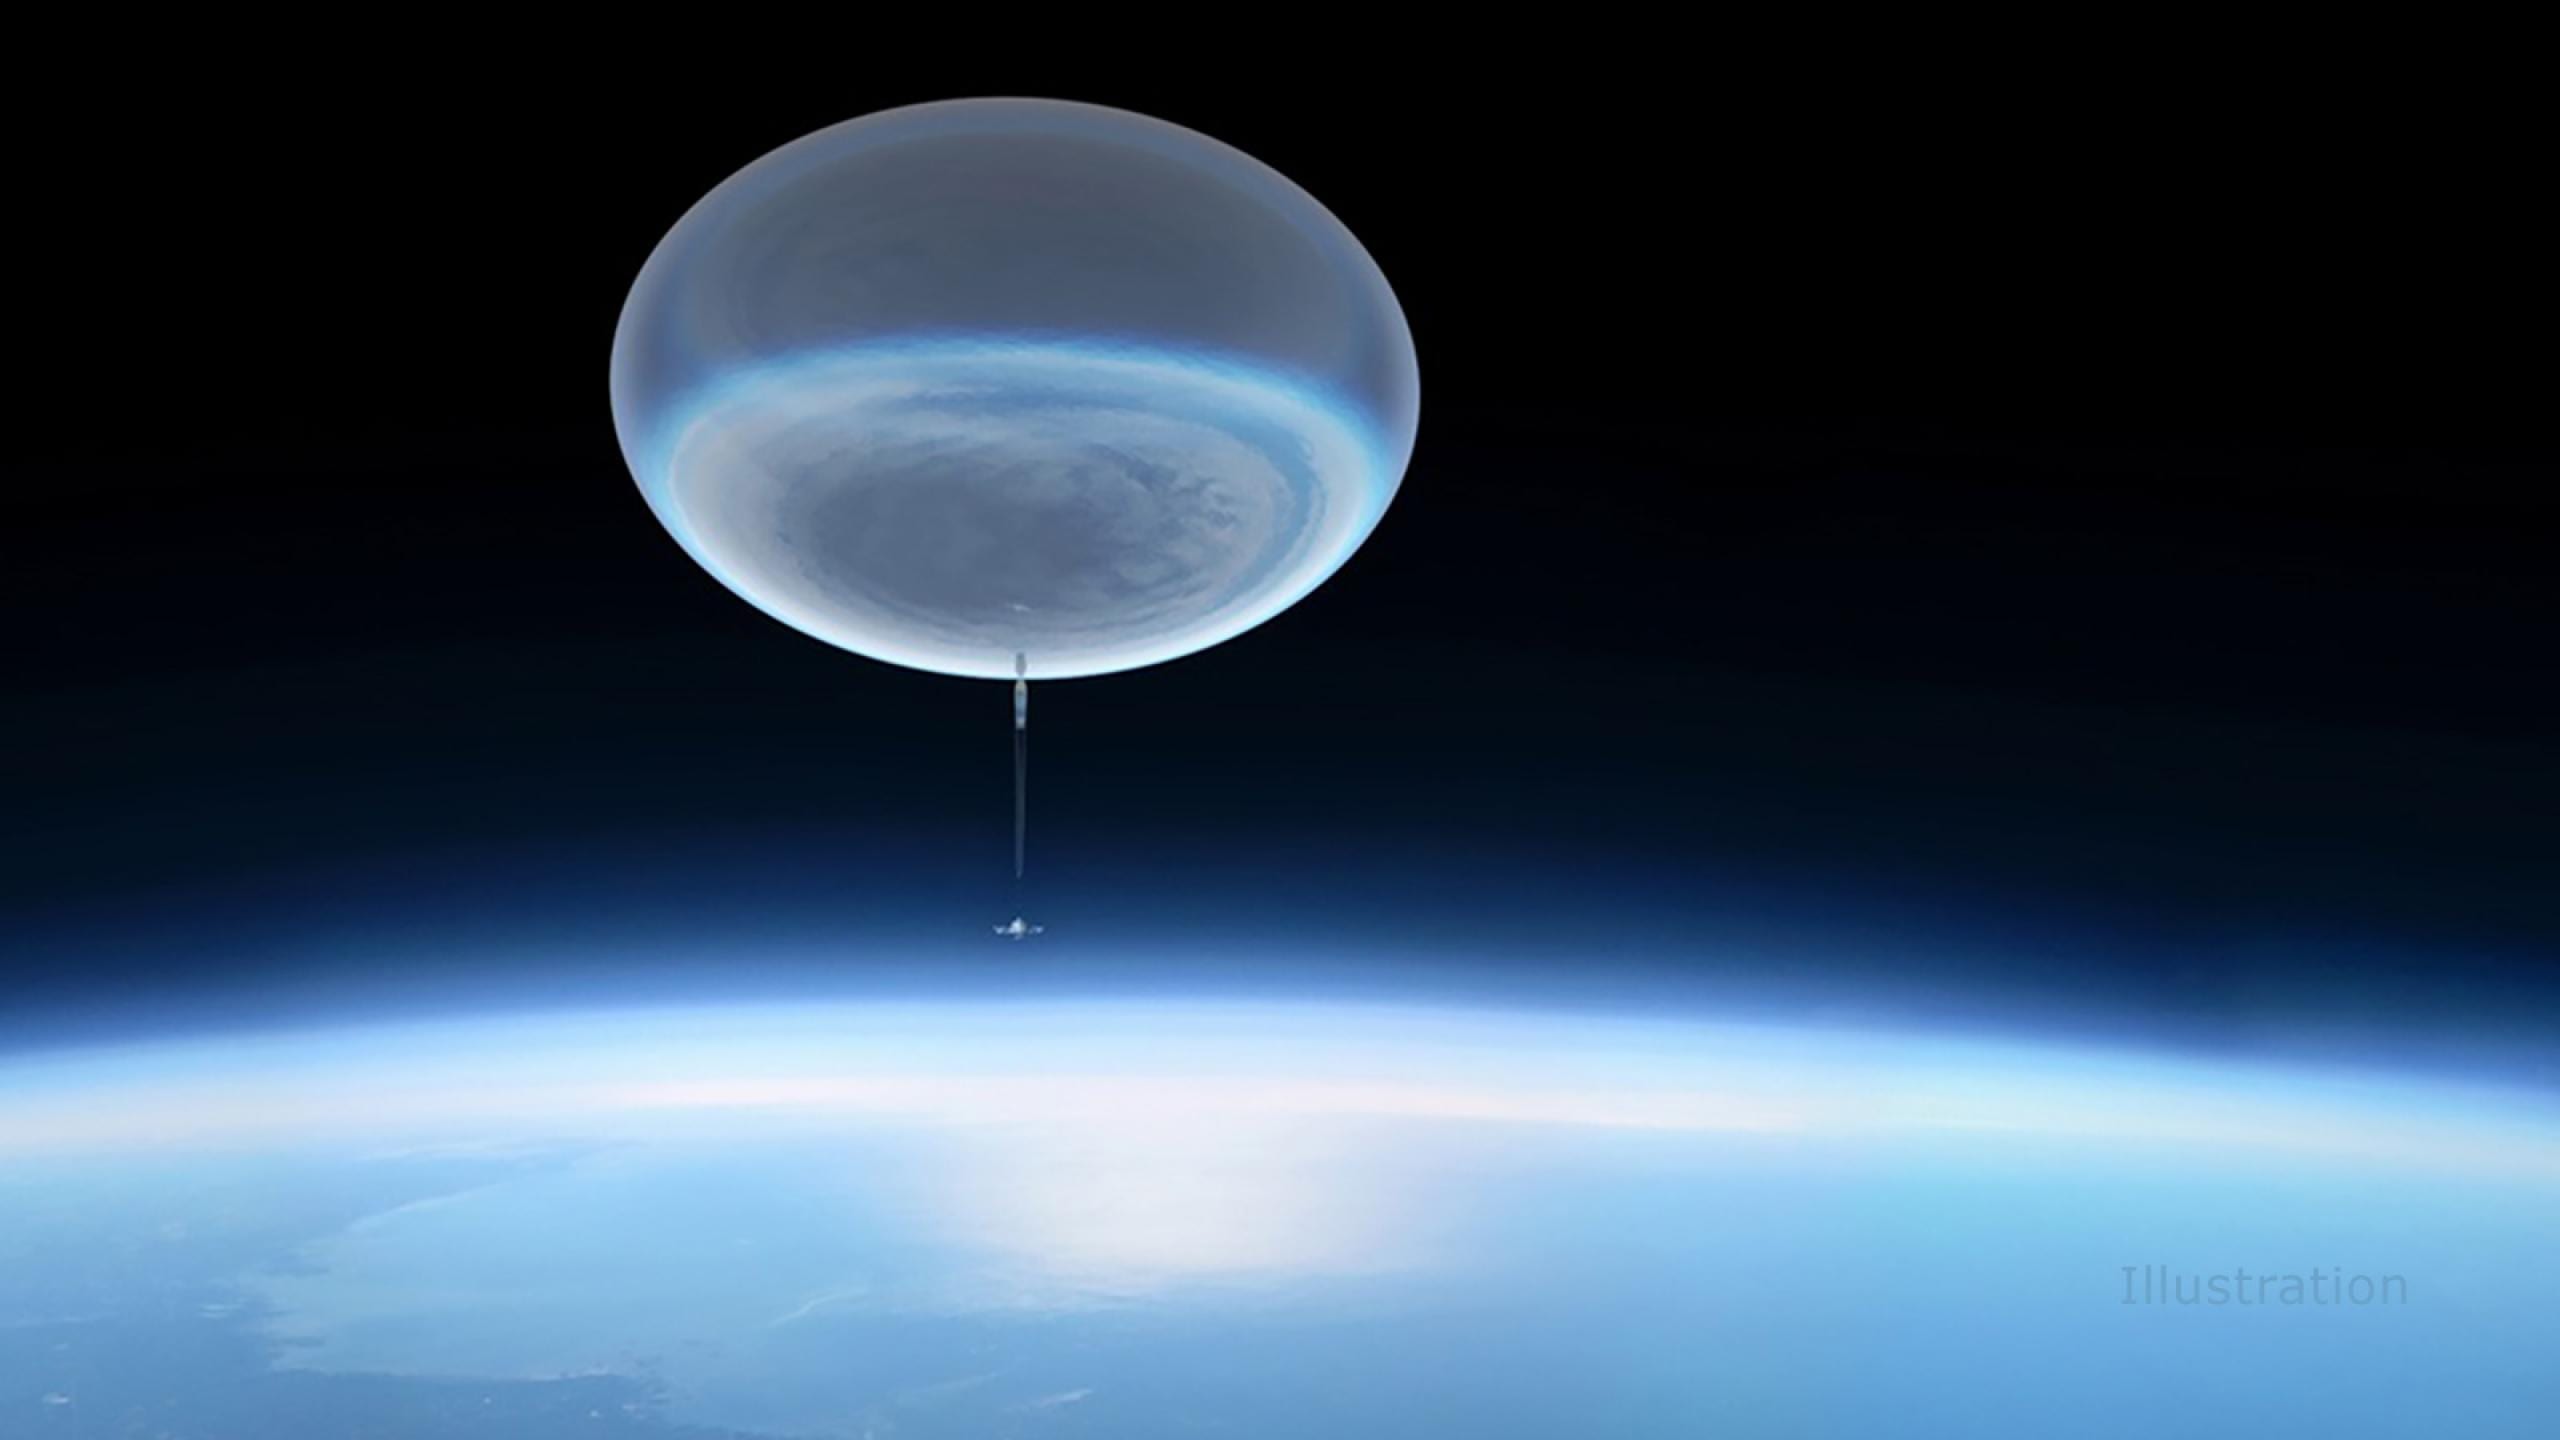 Esta imagen muestra un globo aerostático de gran altitud ascendiendo a la atmósfera superior. Cuando estean completamente inflados, estos globos tienen 400 pies (150 metros) de ancho, o el tamaño de un estadio de fútbol aproximadamente, y alcanzan una altitud de 130.000 pies (24,6 millas o 40 kilómetros). Crédito: imagen conceptual del Centro de Vuelo Espacial Goddard de la NASA /Michael Lentz